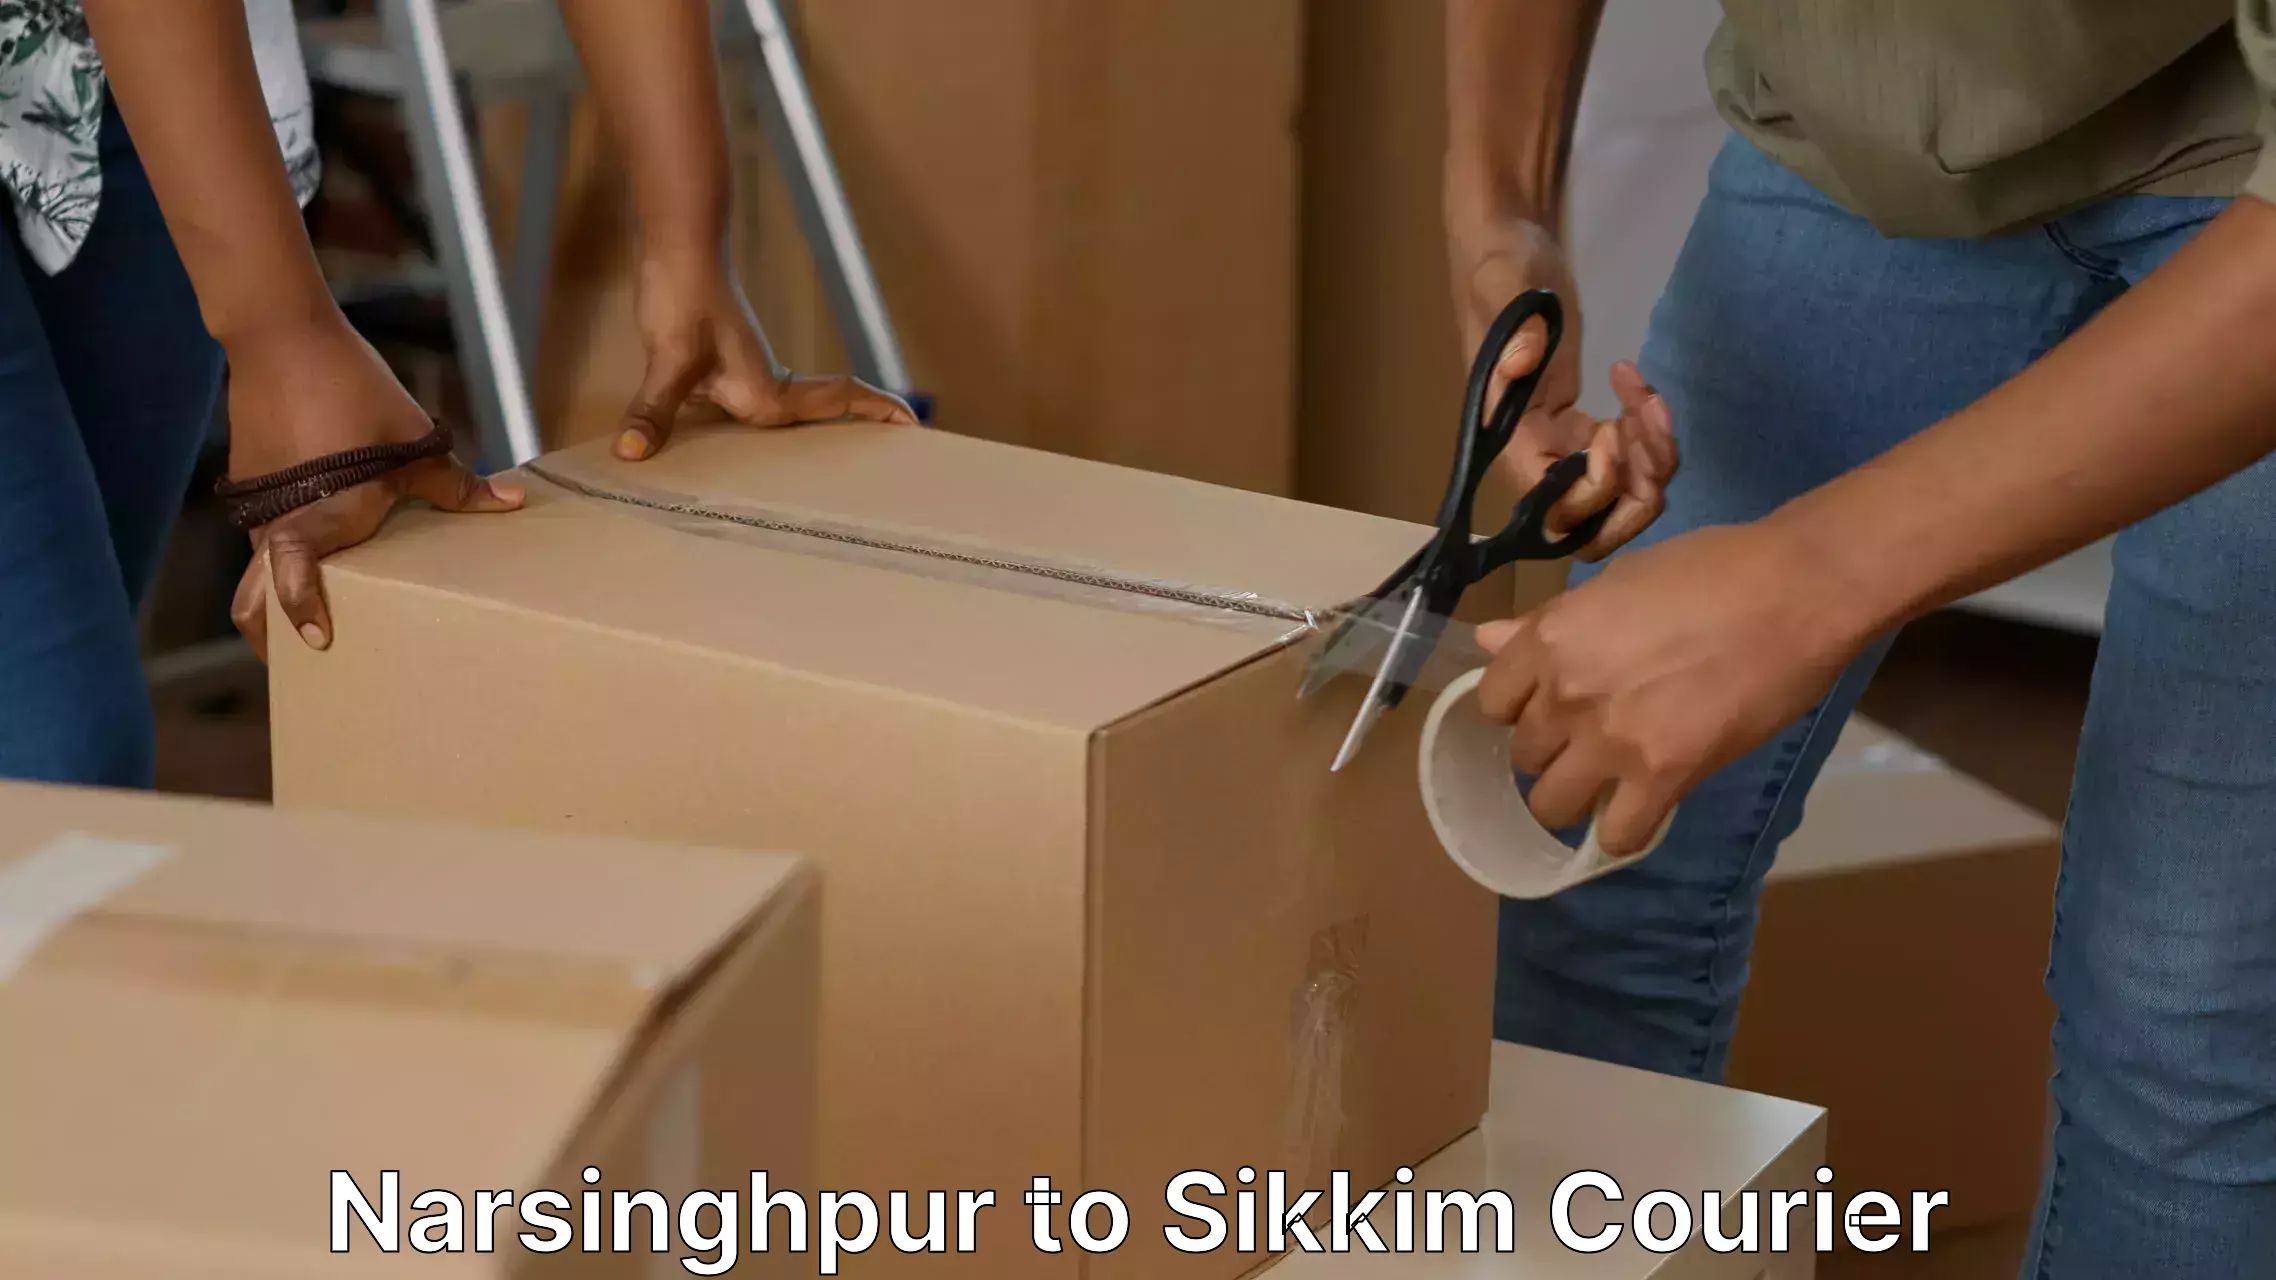 Efficient furniture movers in Narsinghpur to Singtam